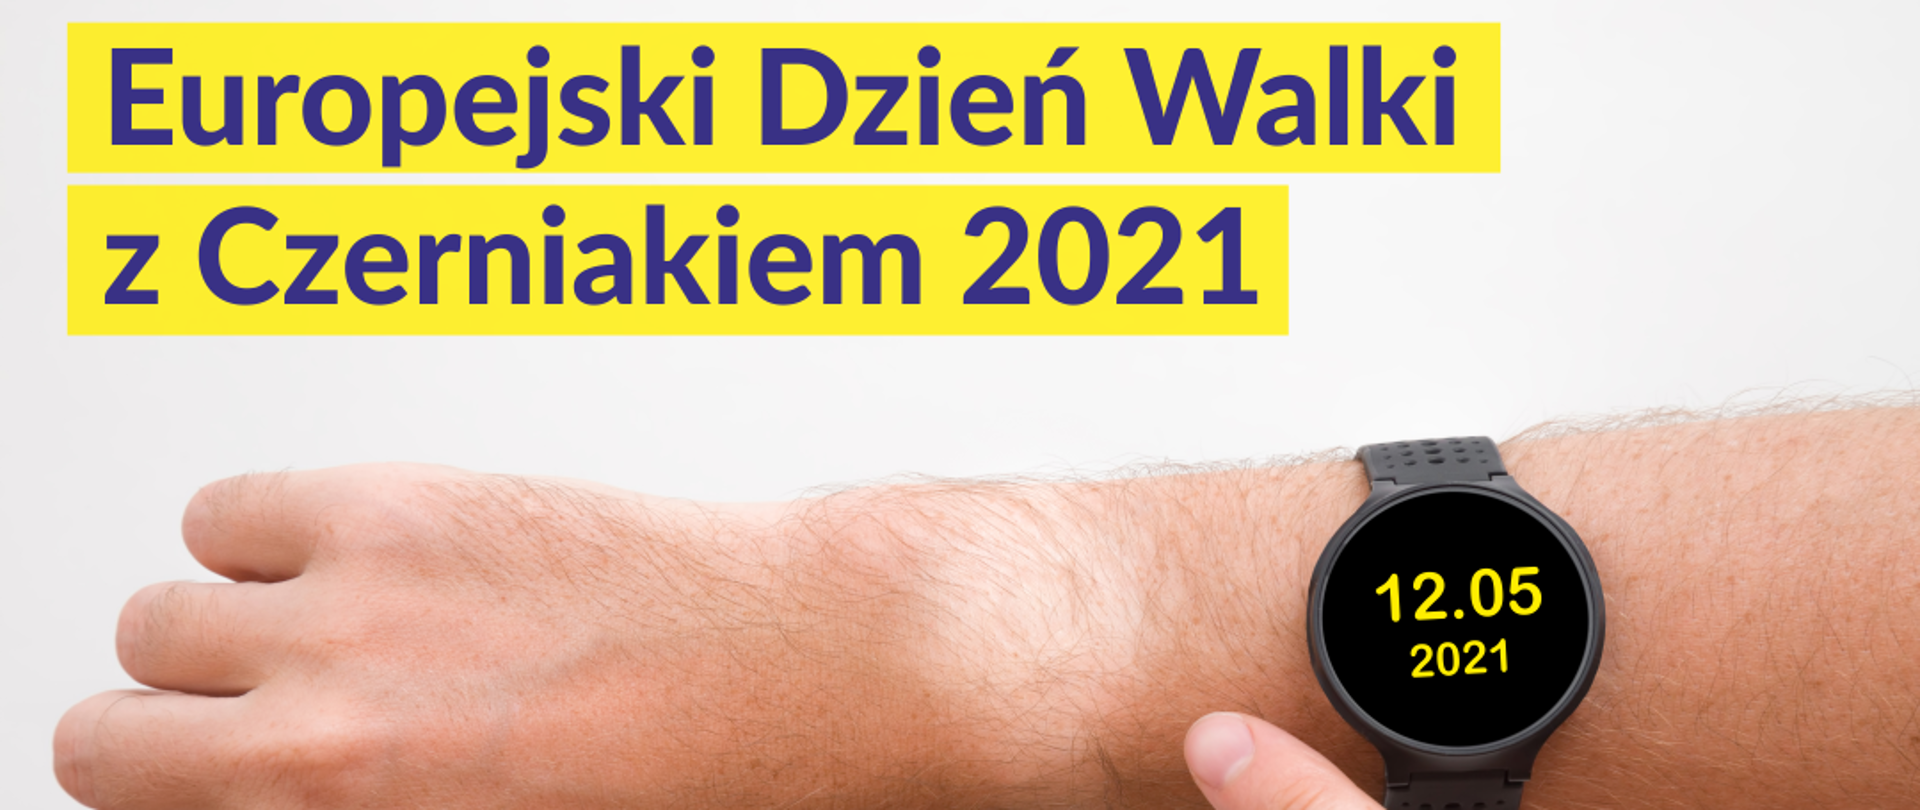 Zdjęcie przedstawia nadgarstek z zegarkiem na którym jest data 12 maj 2021 - Chroń skórę przed czerniakiem - nie przegap szansy na zdrowie